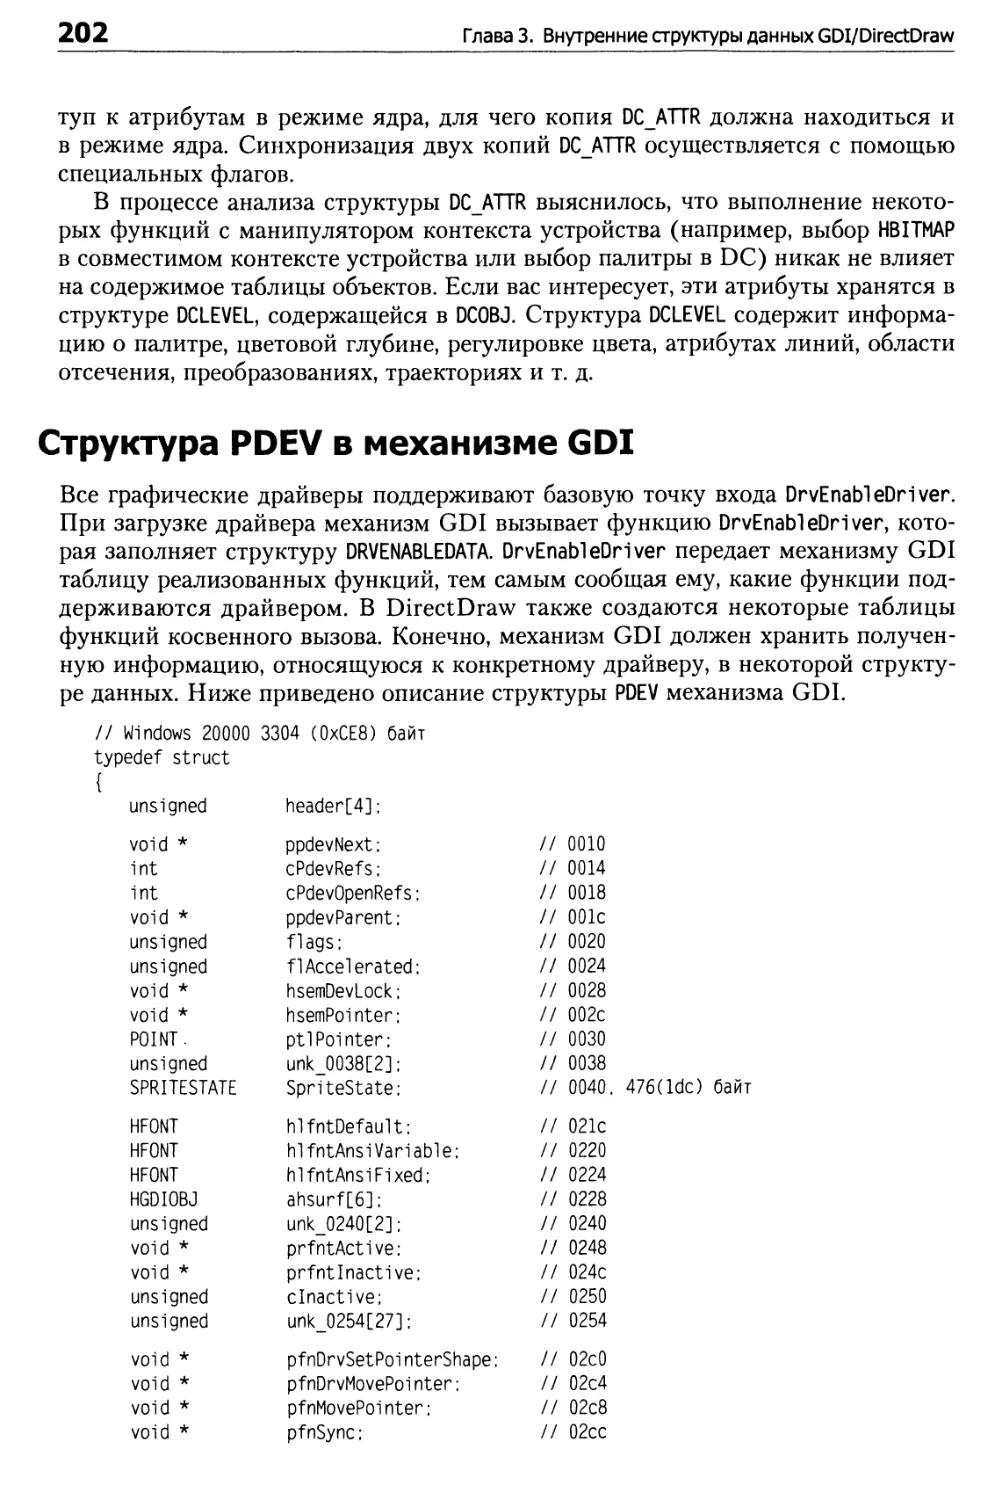 Структура PDEV в механизме GDI